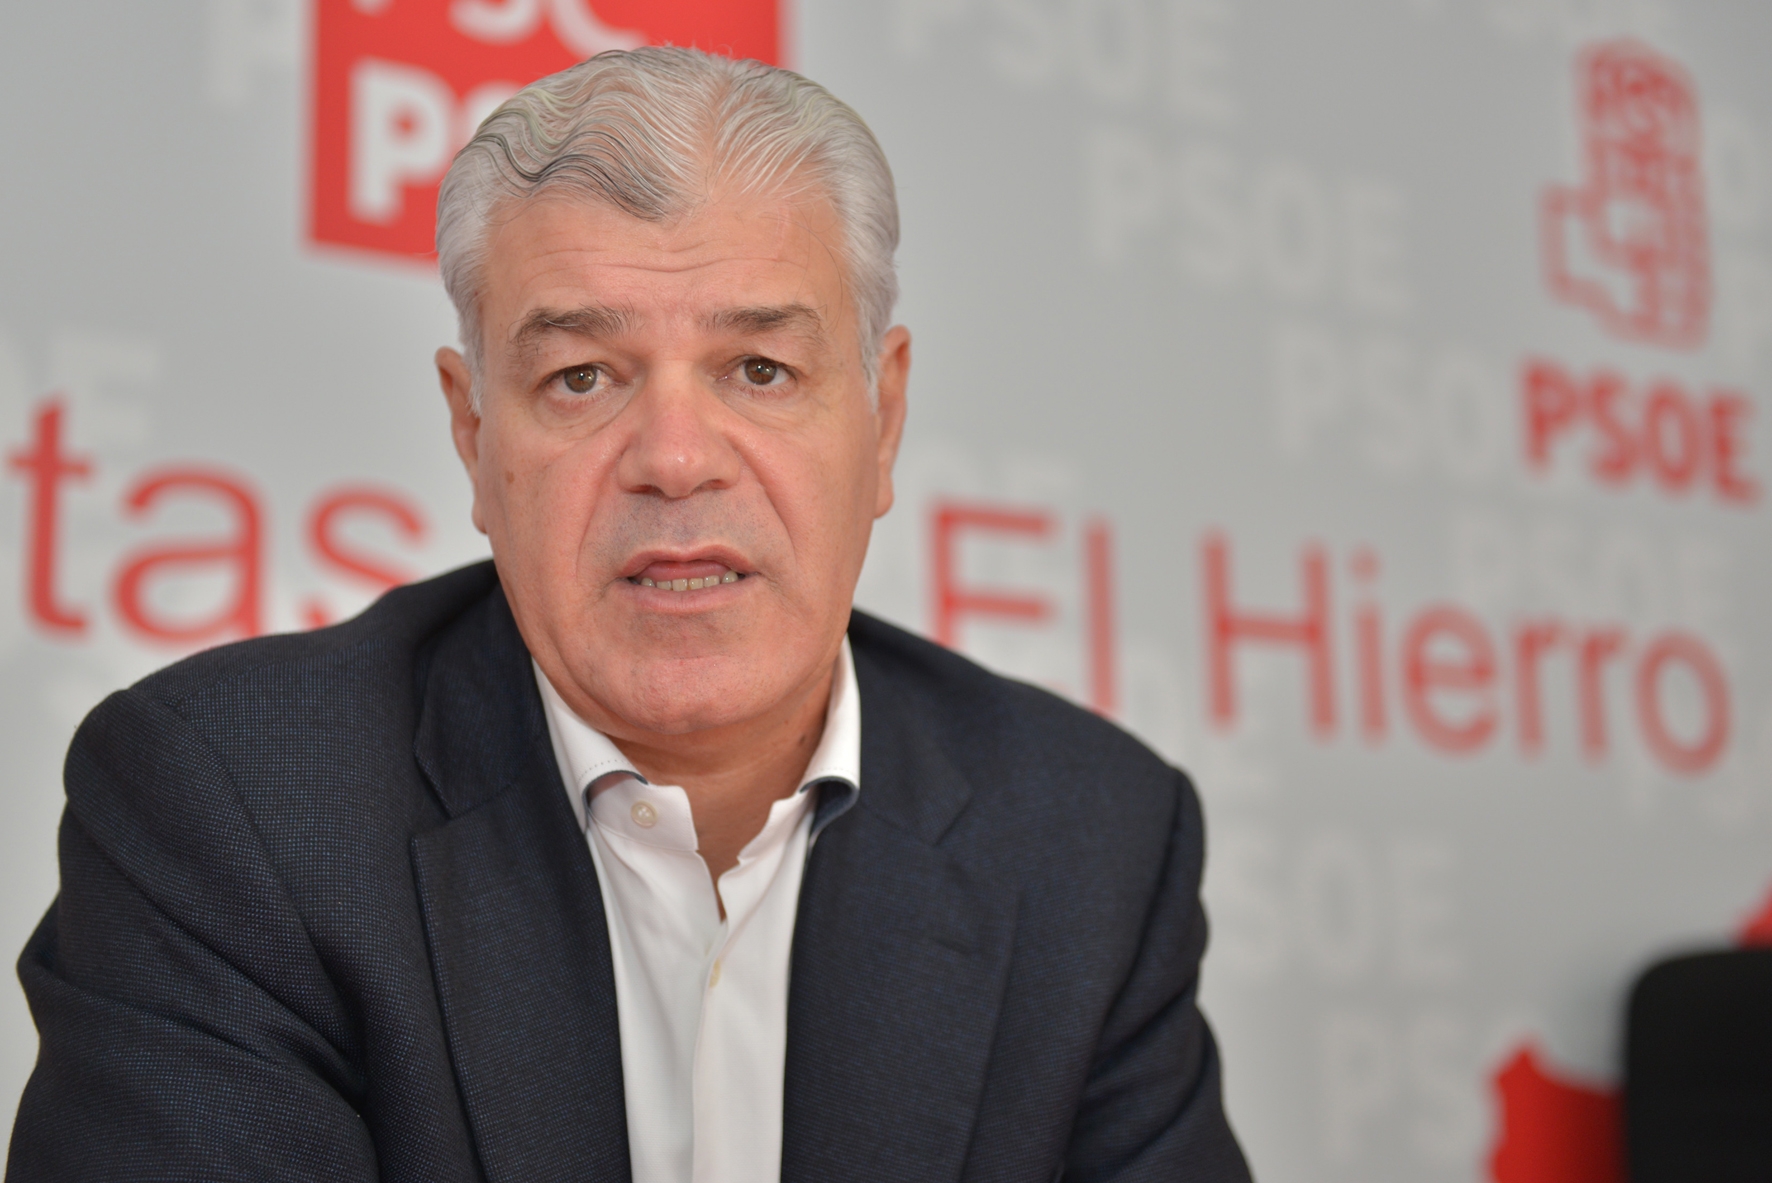 El PSOE herreño celebra como “un regalo Reyes” para El Hierro el nuevo Convenio de Carreteras firmado por Pedro Sánchez